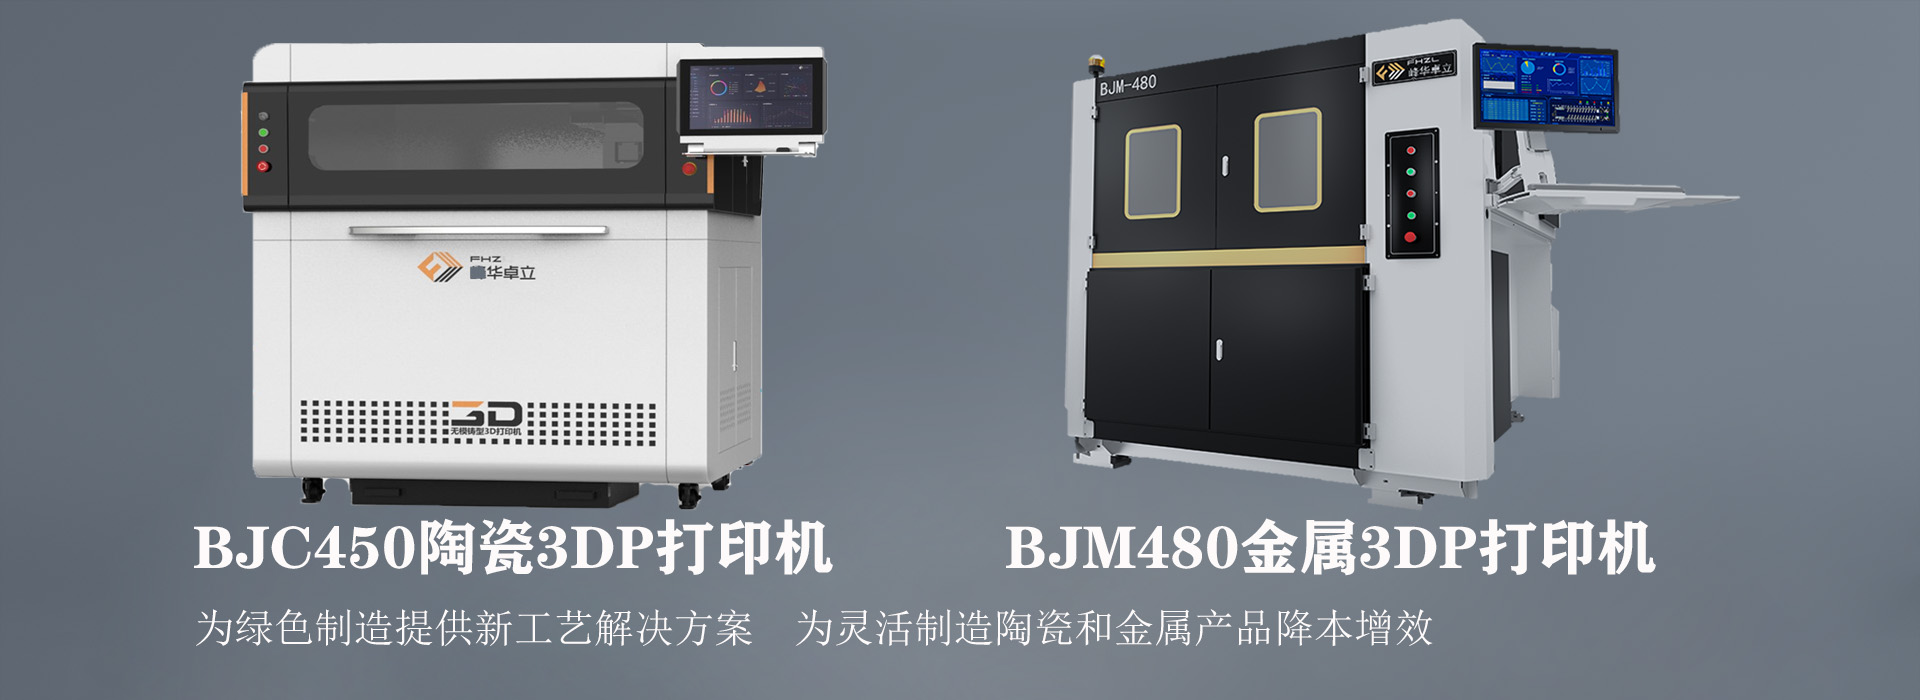 BJM480打印机